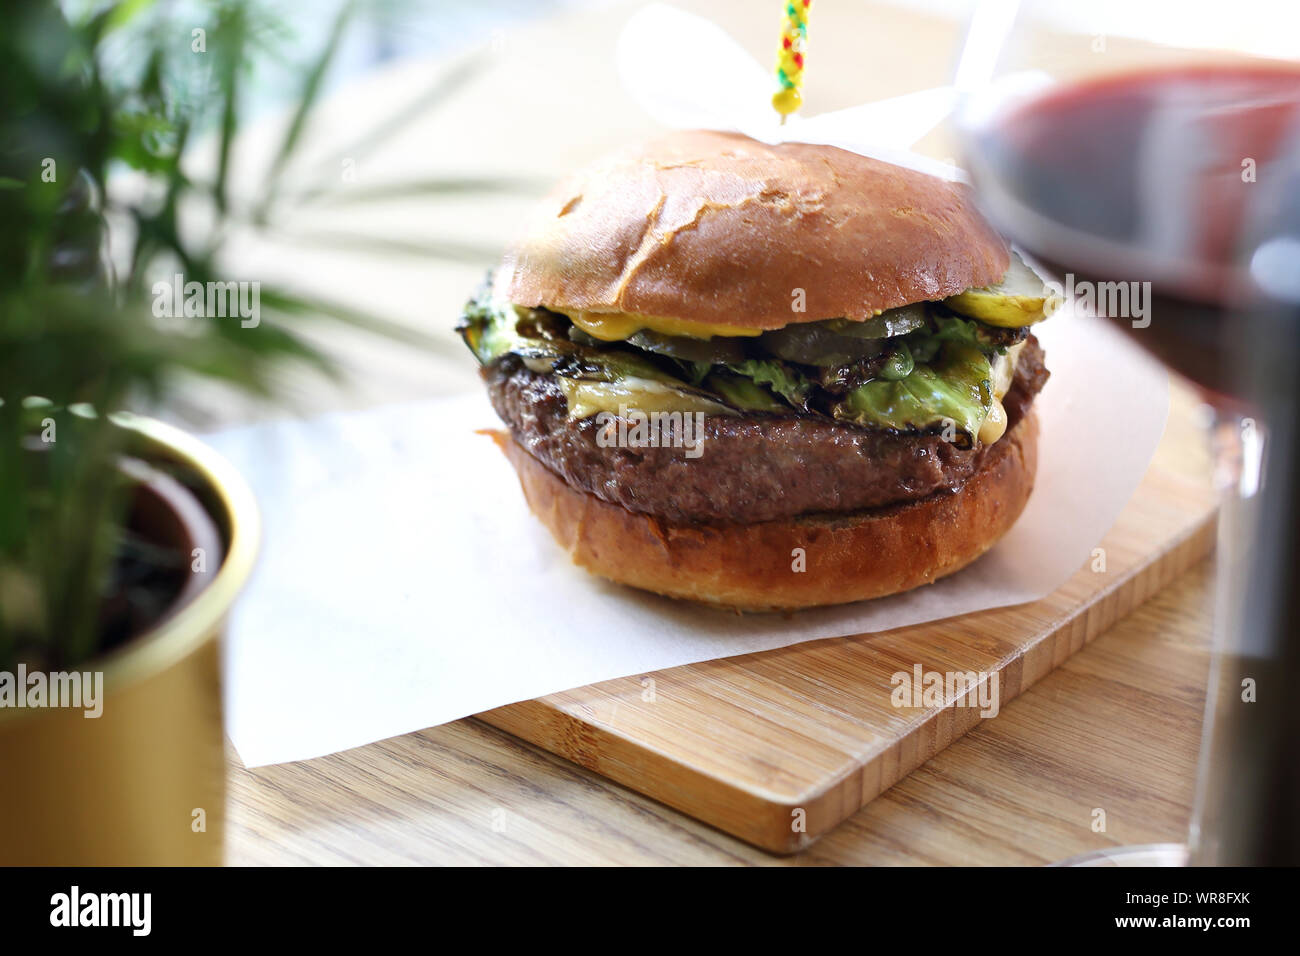 Burger de boeuf escalope avec une salade verte et de légumes verts grillés Banque D'Images